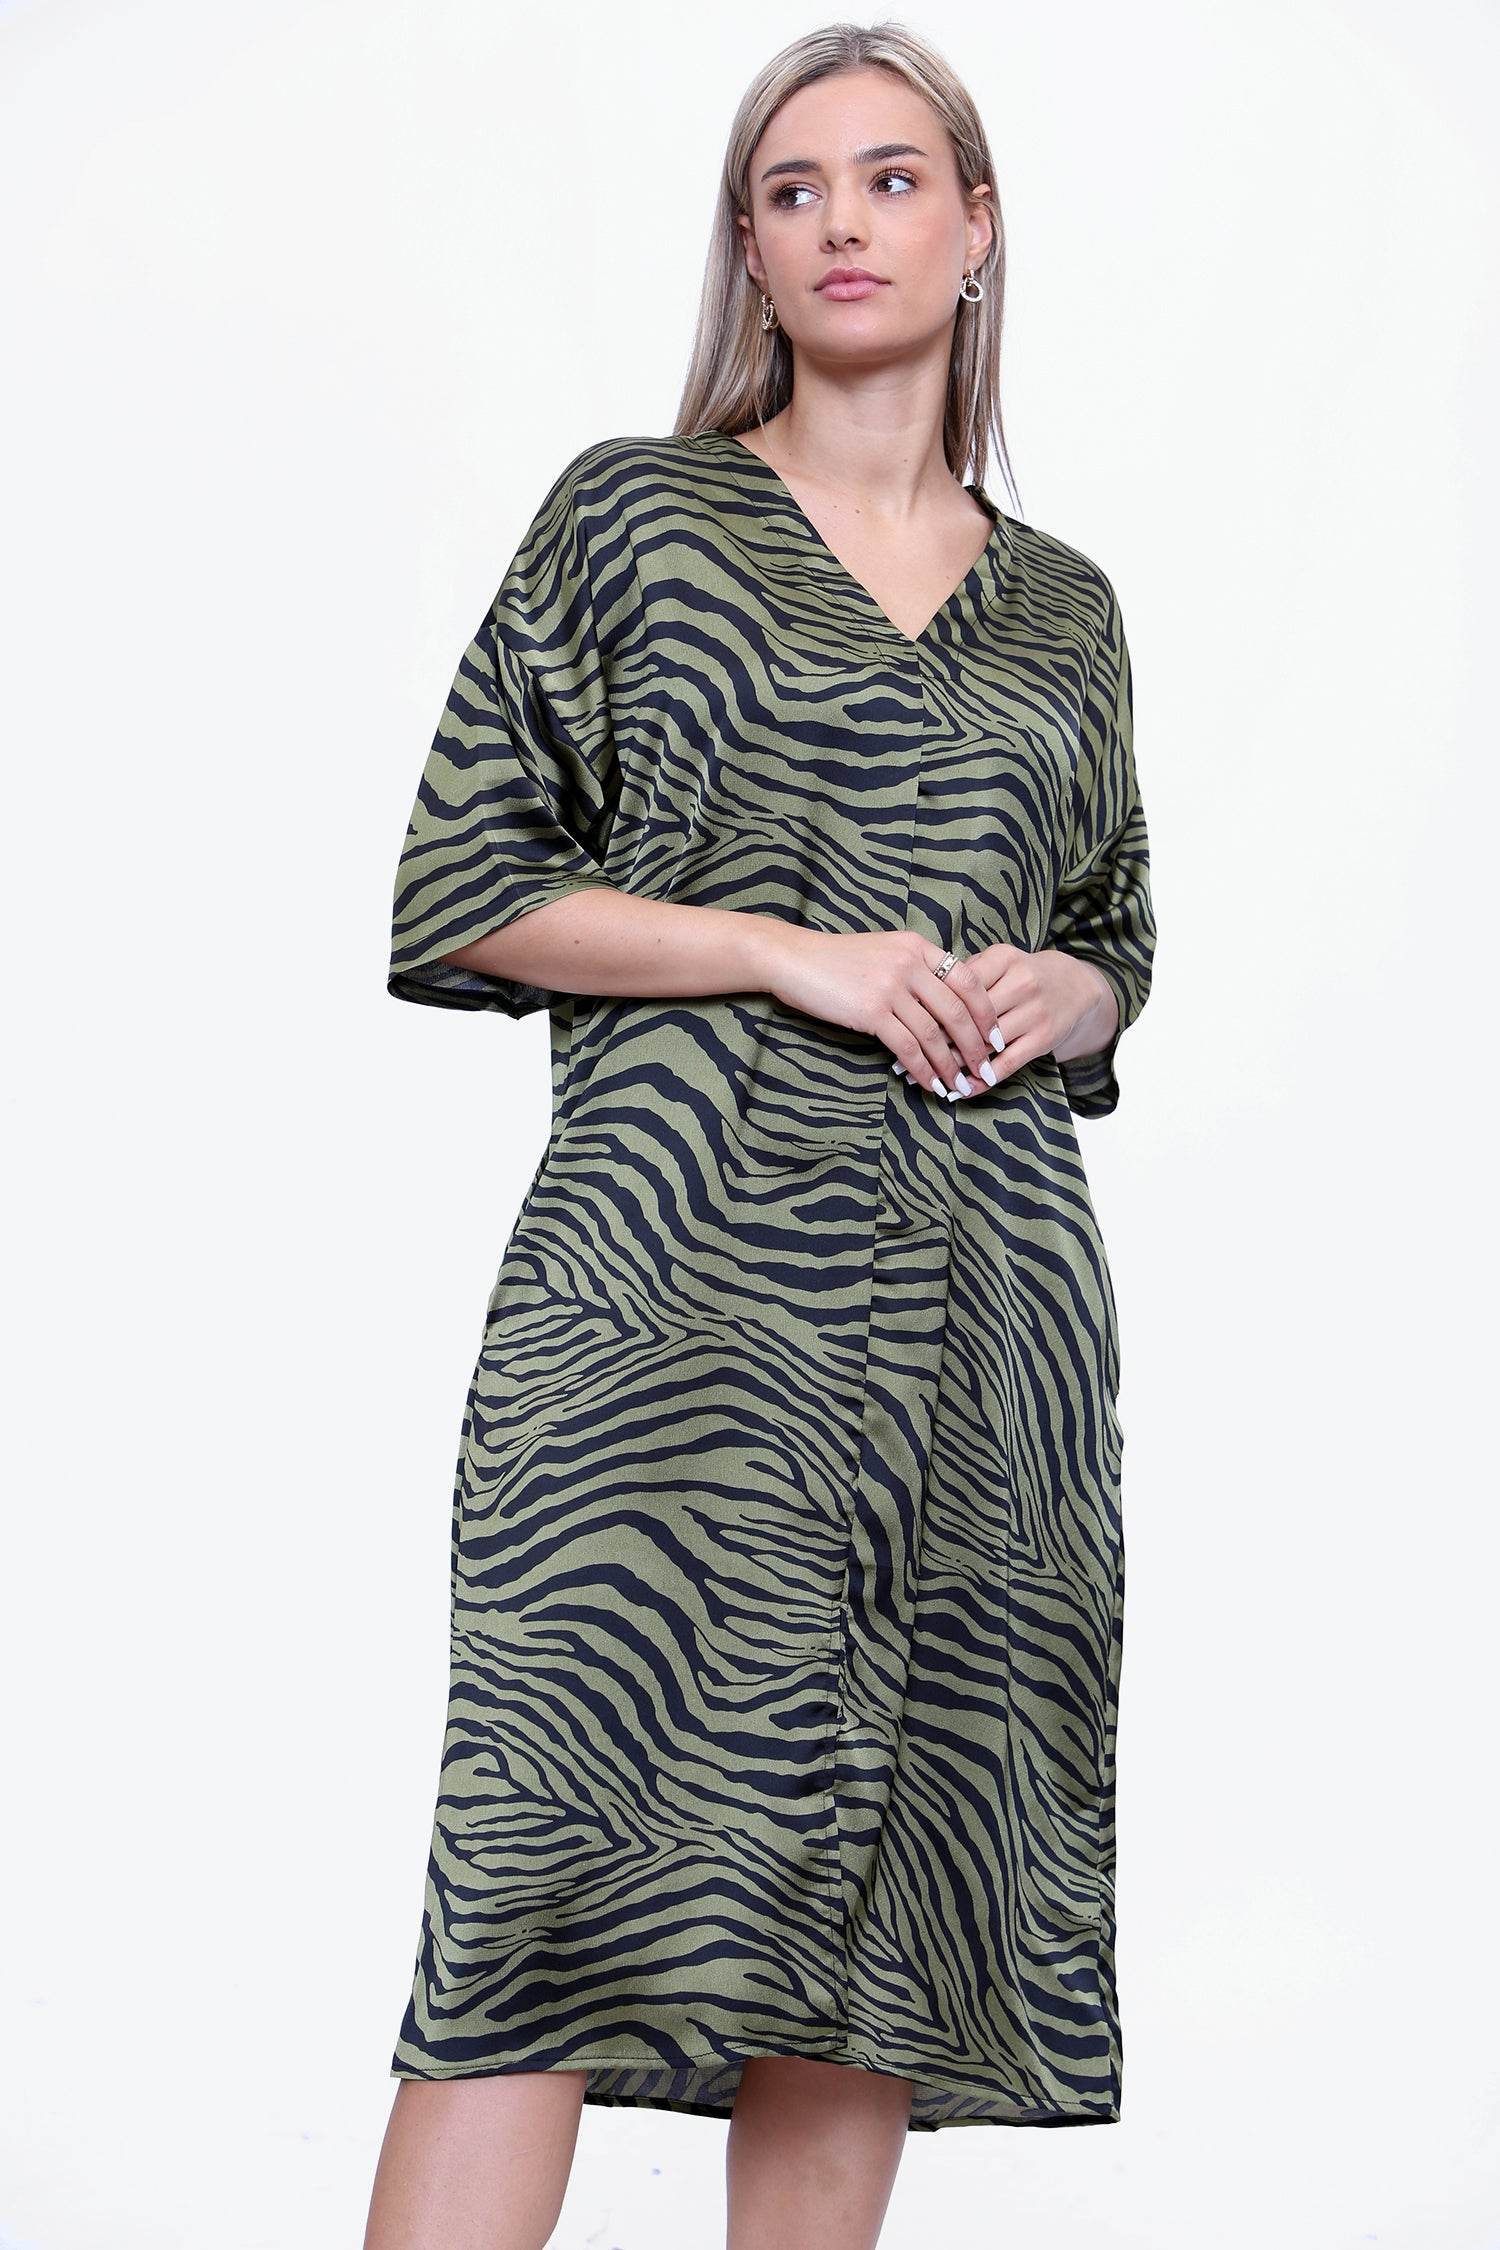 Love Sunshine Khaki Zebra Printed Oversized Shift Dress LS-2252